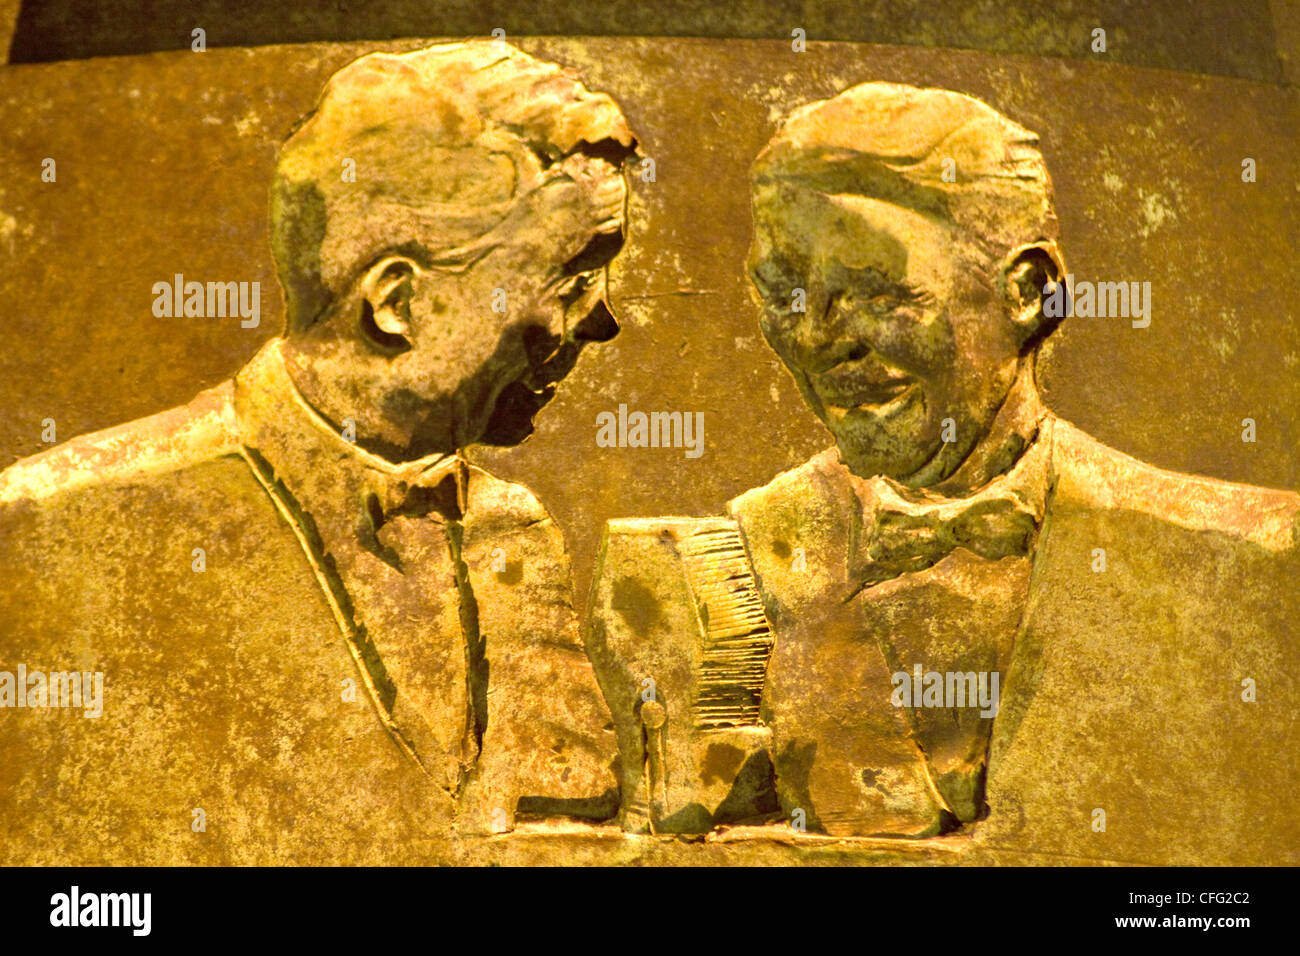 Close up de bas-relief en bronze les chiffres négatifs par Robert Graham intitulé Programmes sociaux'-2ème terme prix RAD Mem, Washington DC Banque D'Images